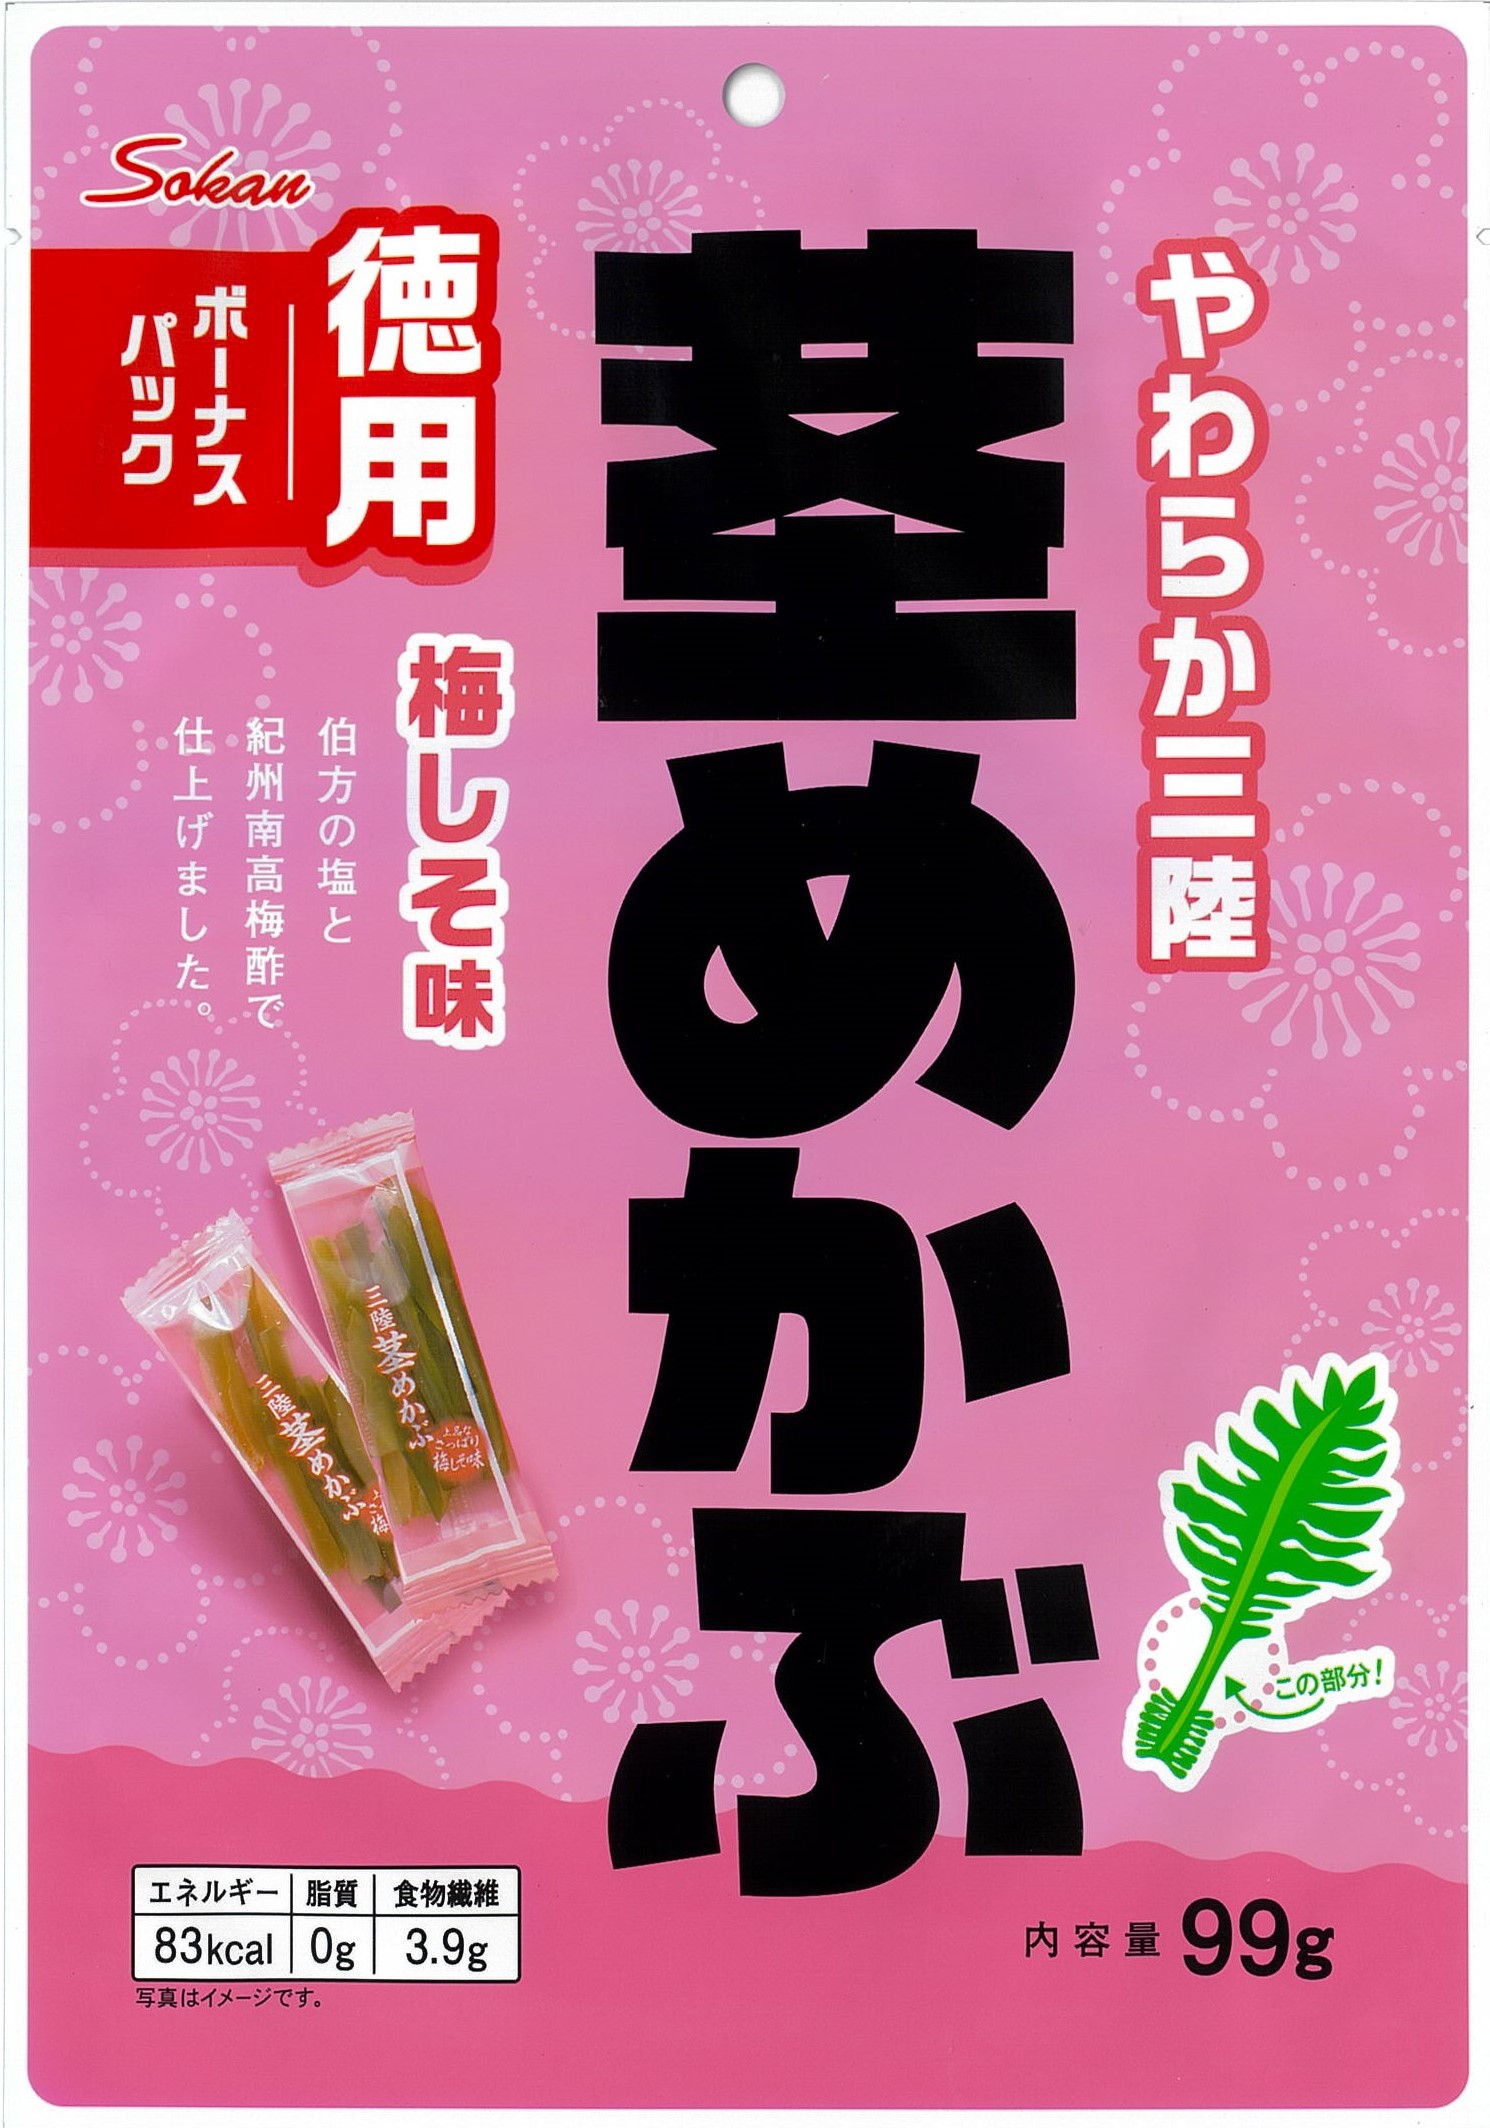 日本最大の <BR>HO-2891 やわらか三陸茎めかぶ 梅しそ味 300g <BR>食物繊維 熱中症予防 工事現場 熱中症対策 作業員 塩分補給 